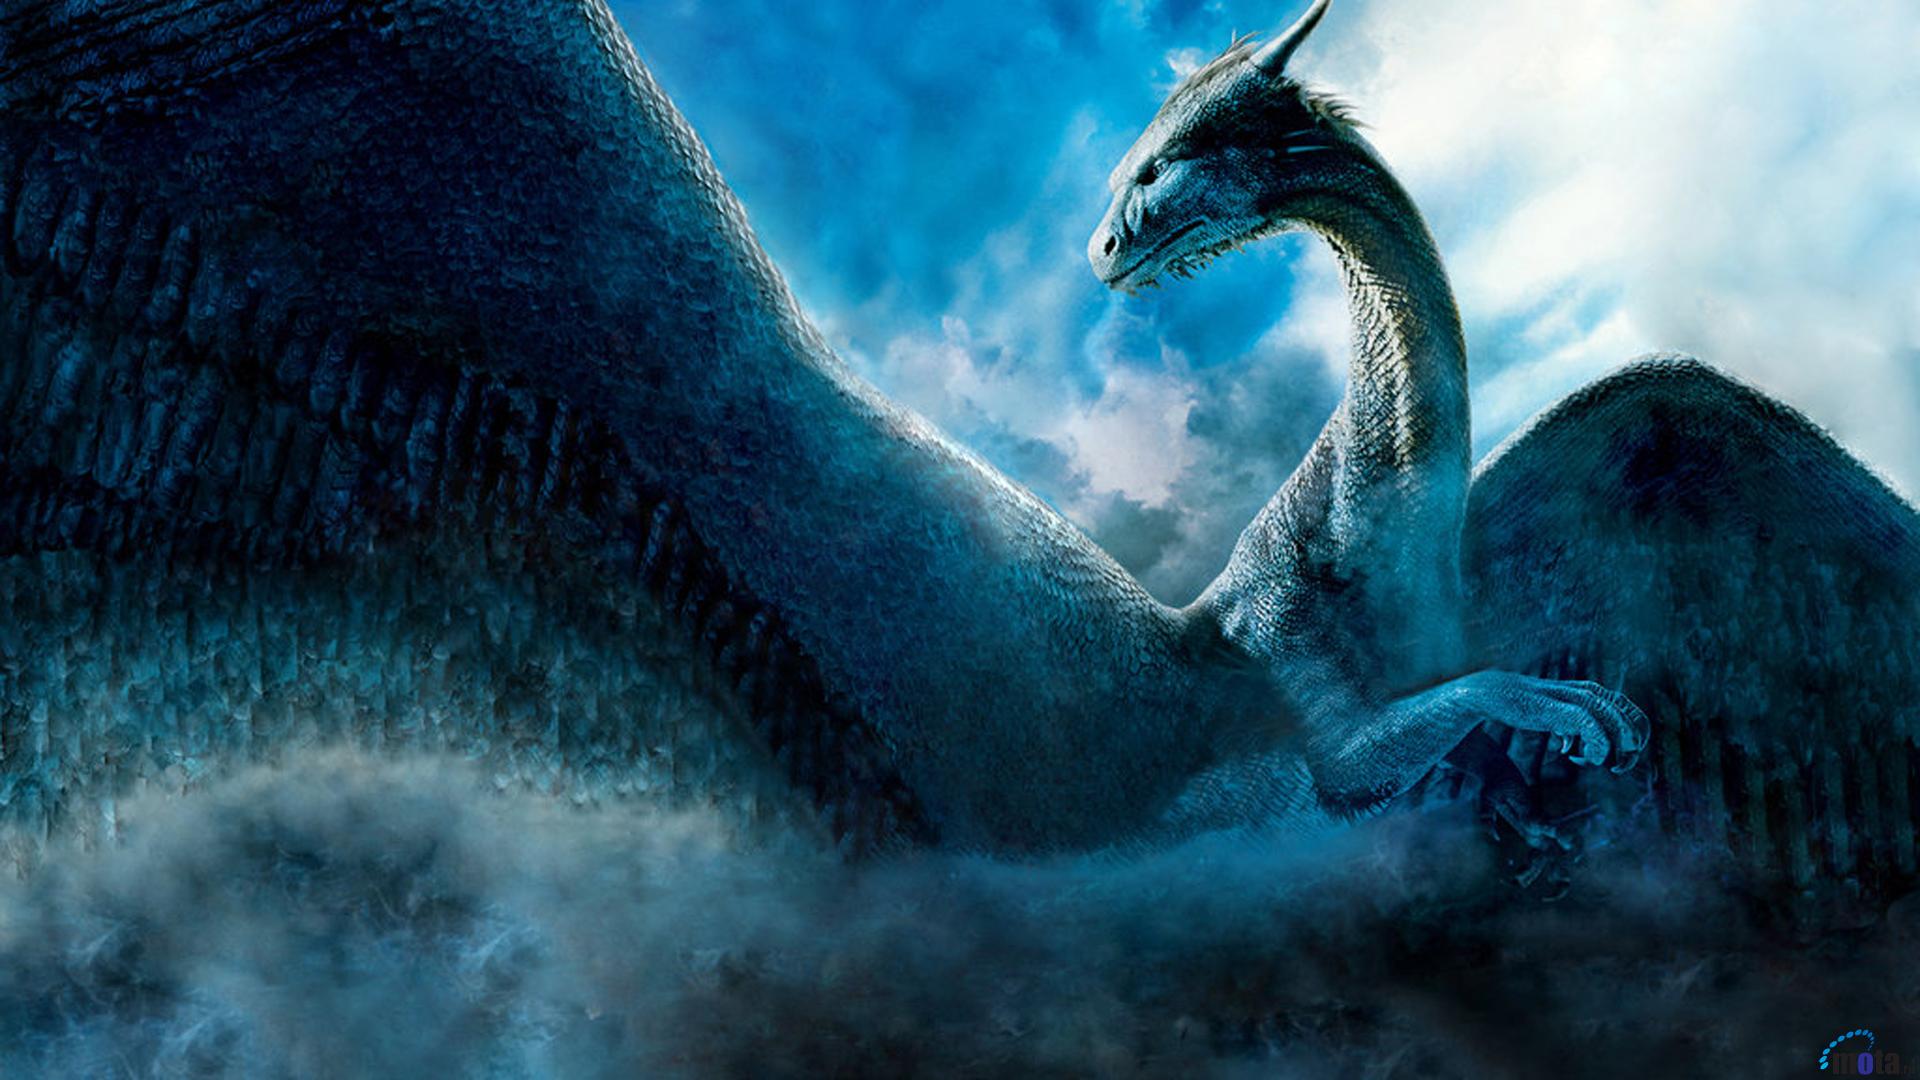 1080p Dragon Wallpaper - Dragon Eragon - HD Wallpaper 